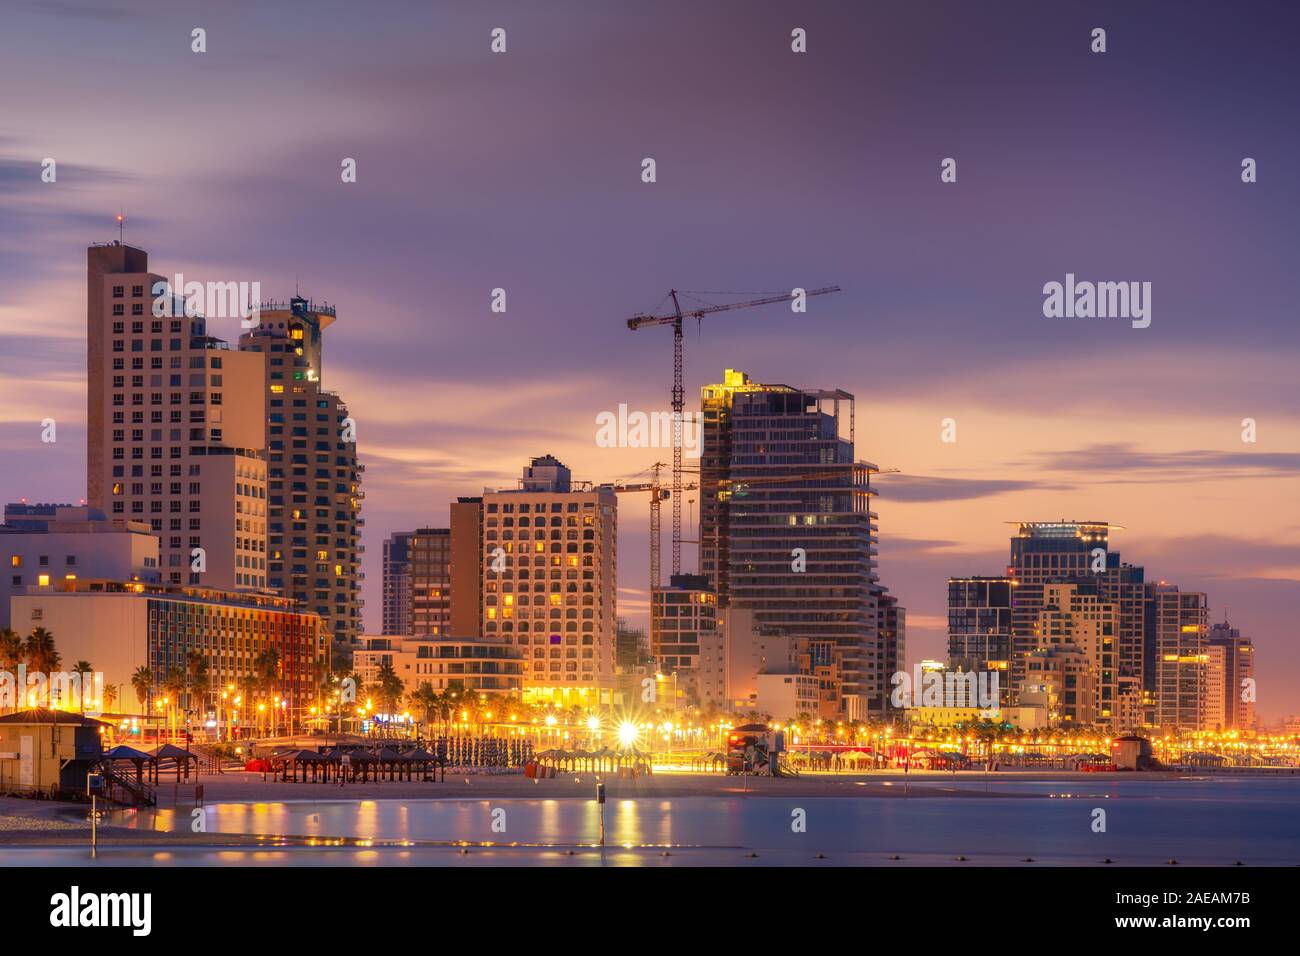 Skyline von Tel Aviv, Israel. Stadtbild Bild von Tel Aviv Strand mit einigen seiner berühmten Hotels in Sunrise und Nacht Stockfoto